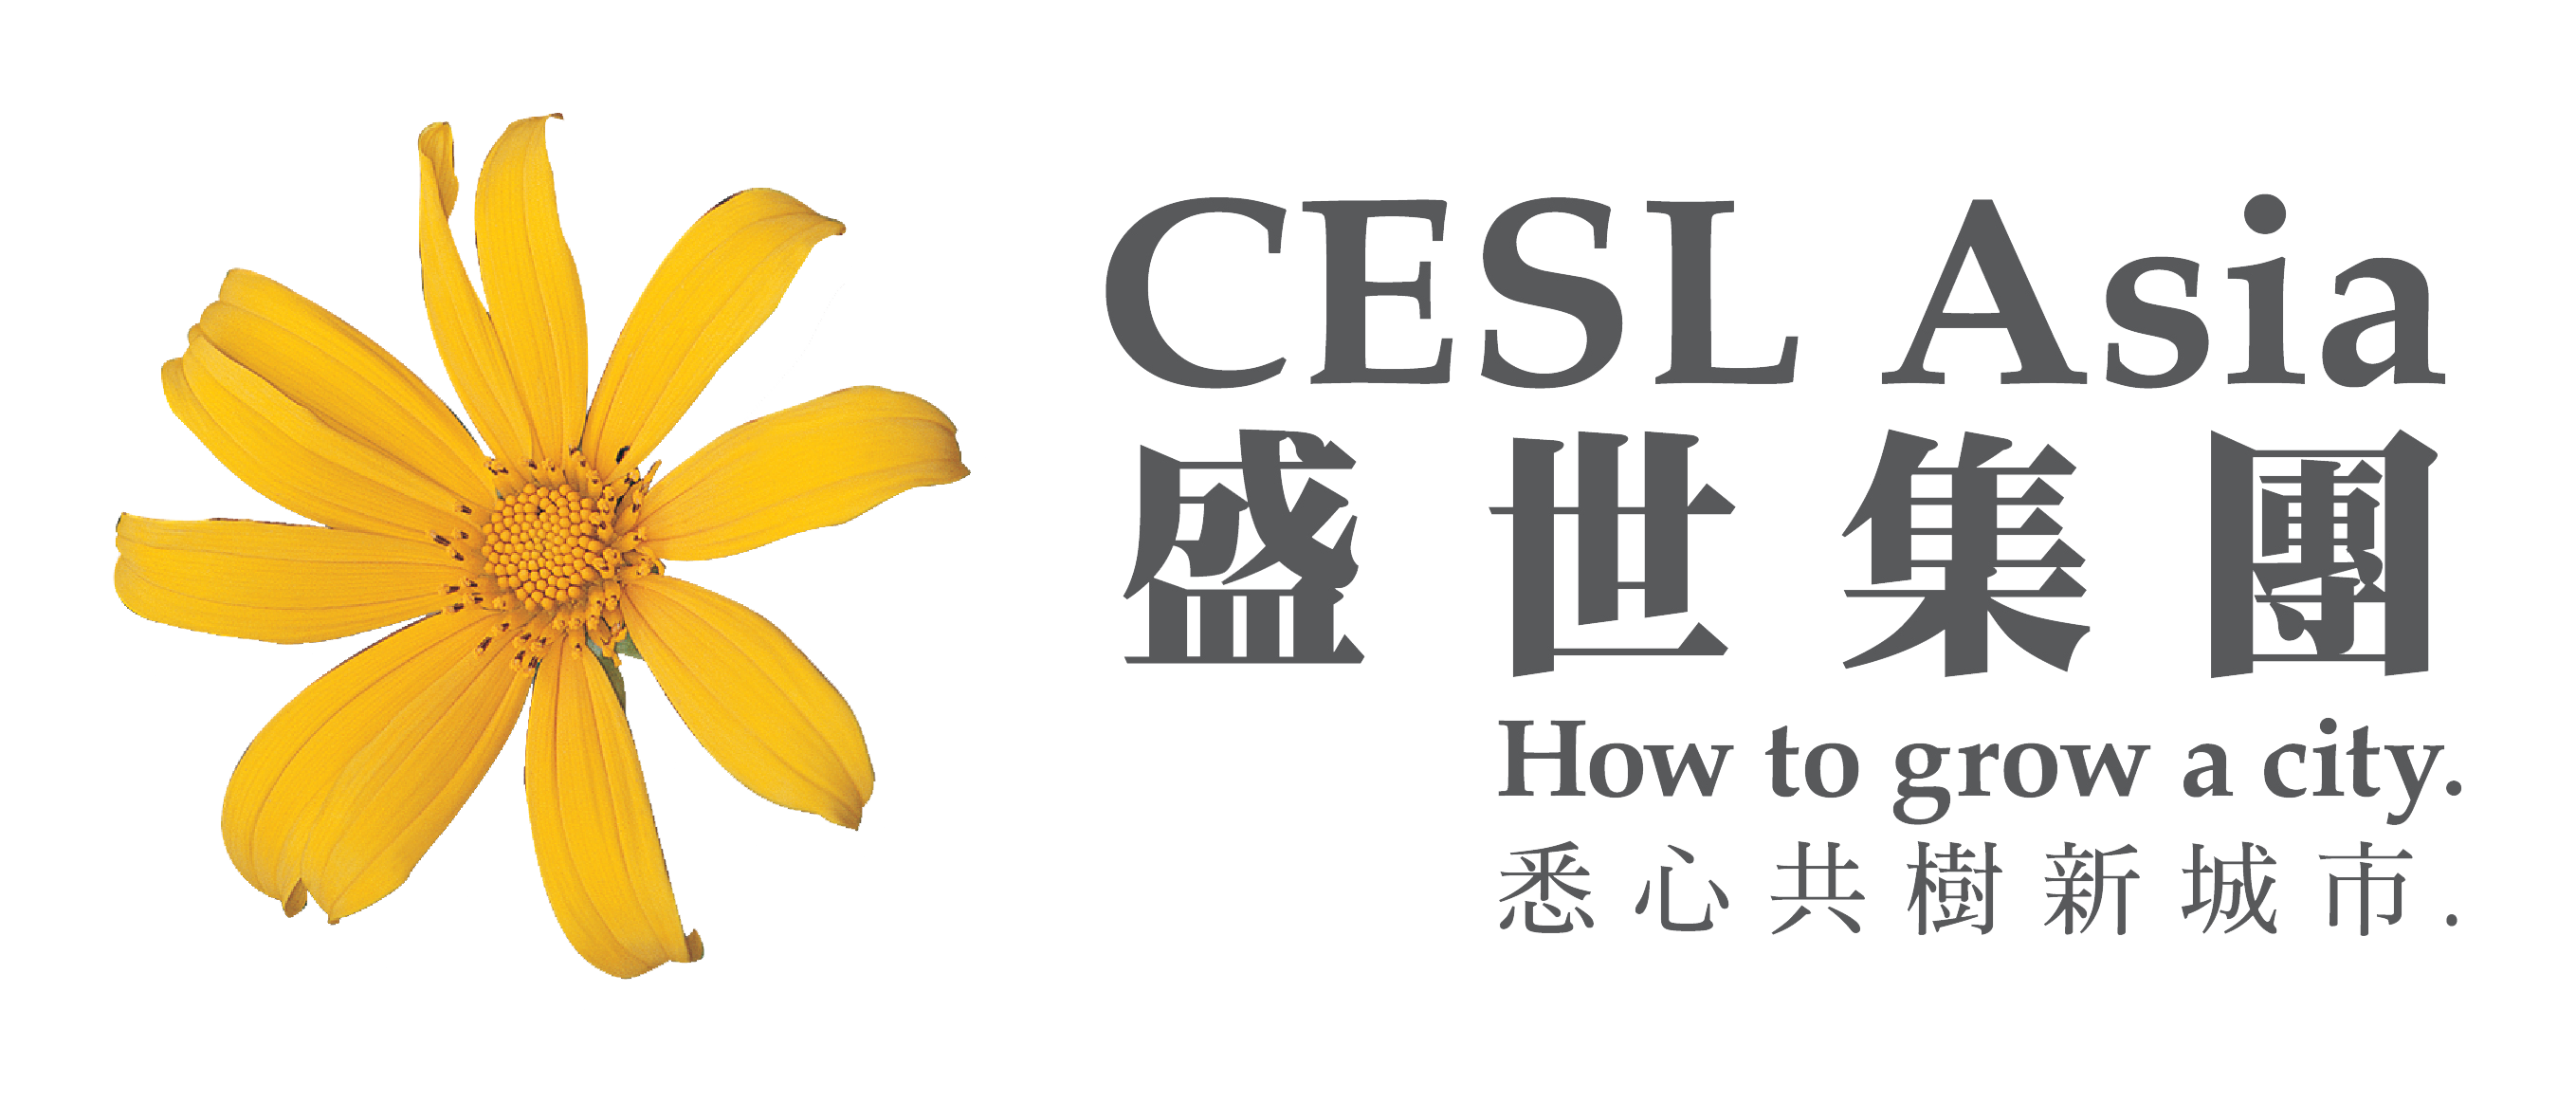 Established CESL Asia – Investment & Services, Limited